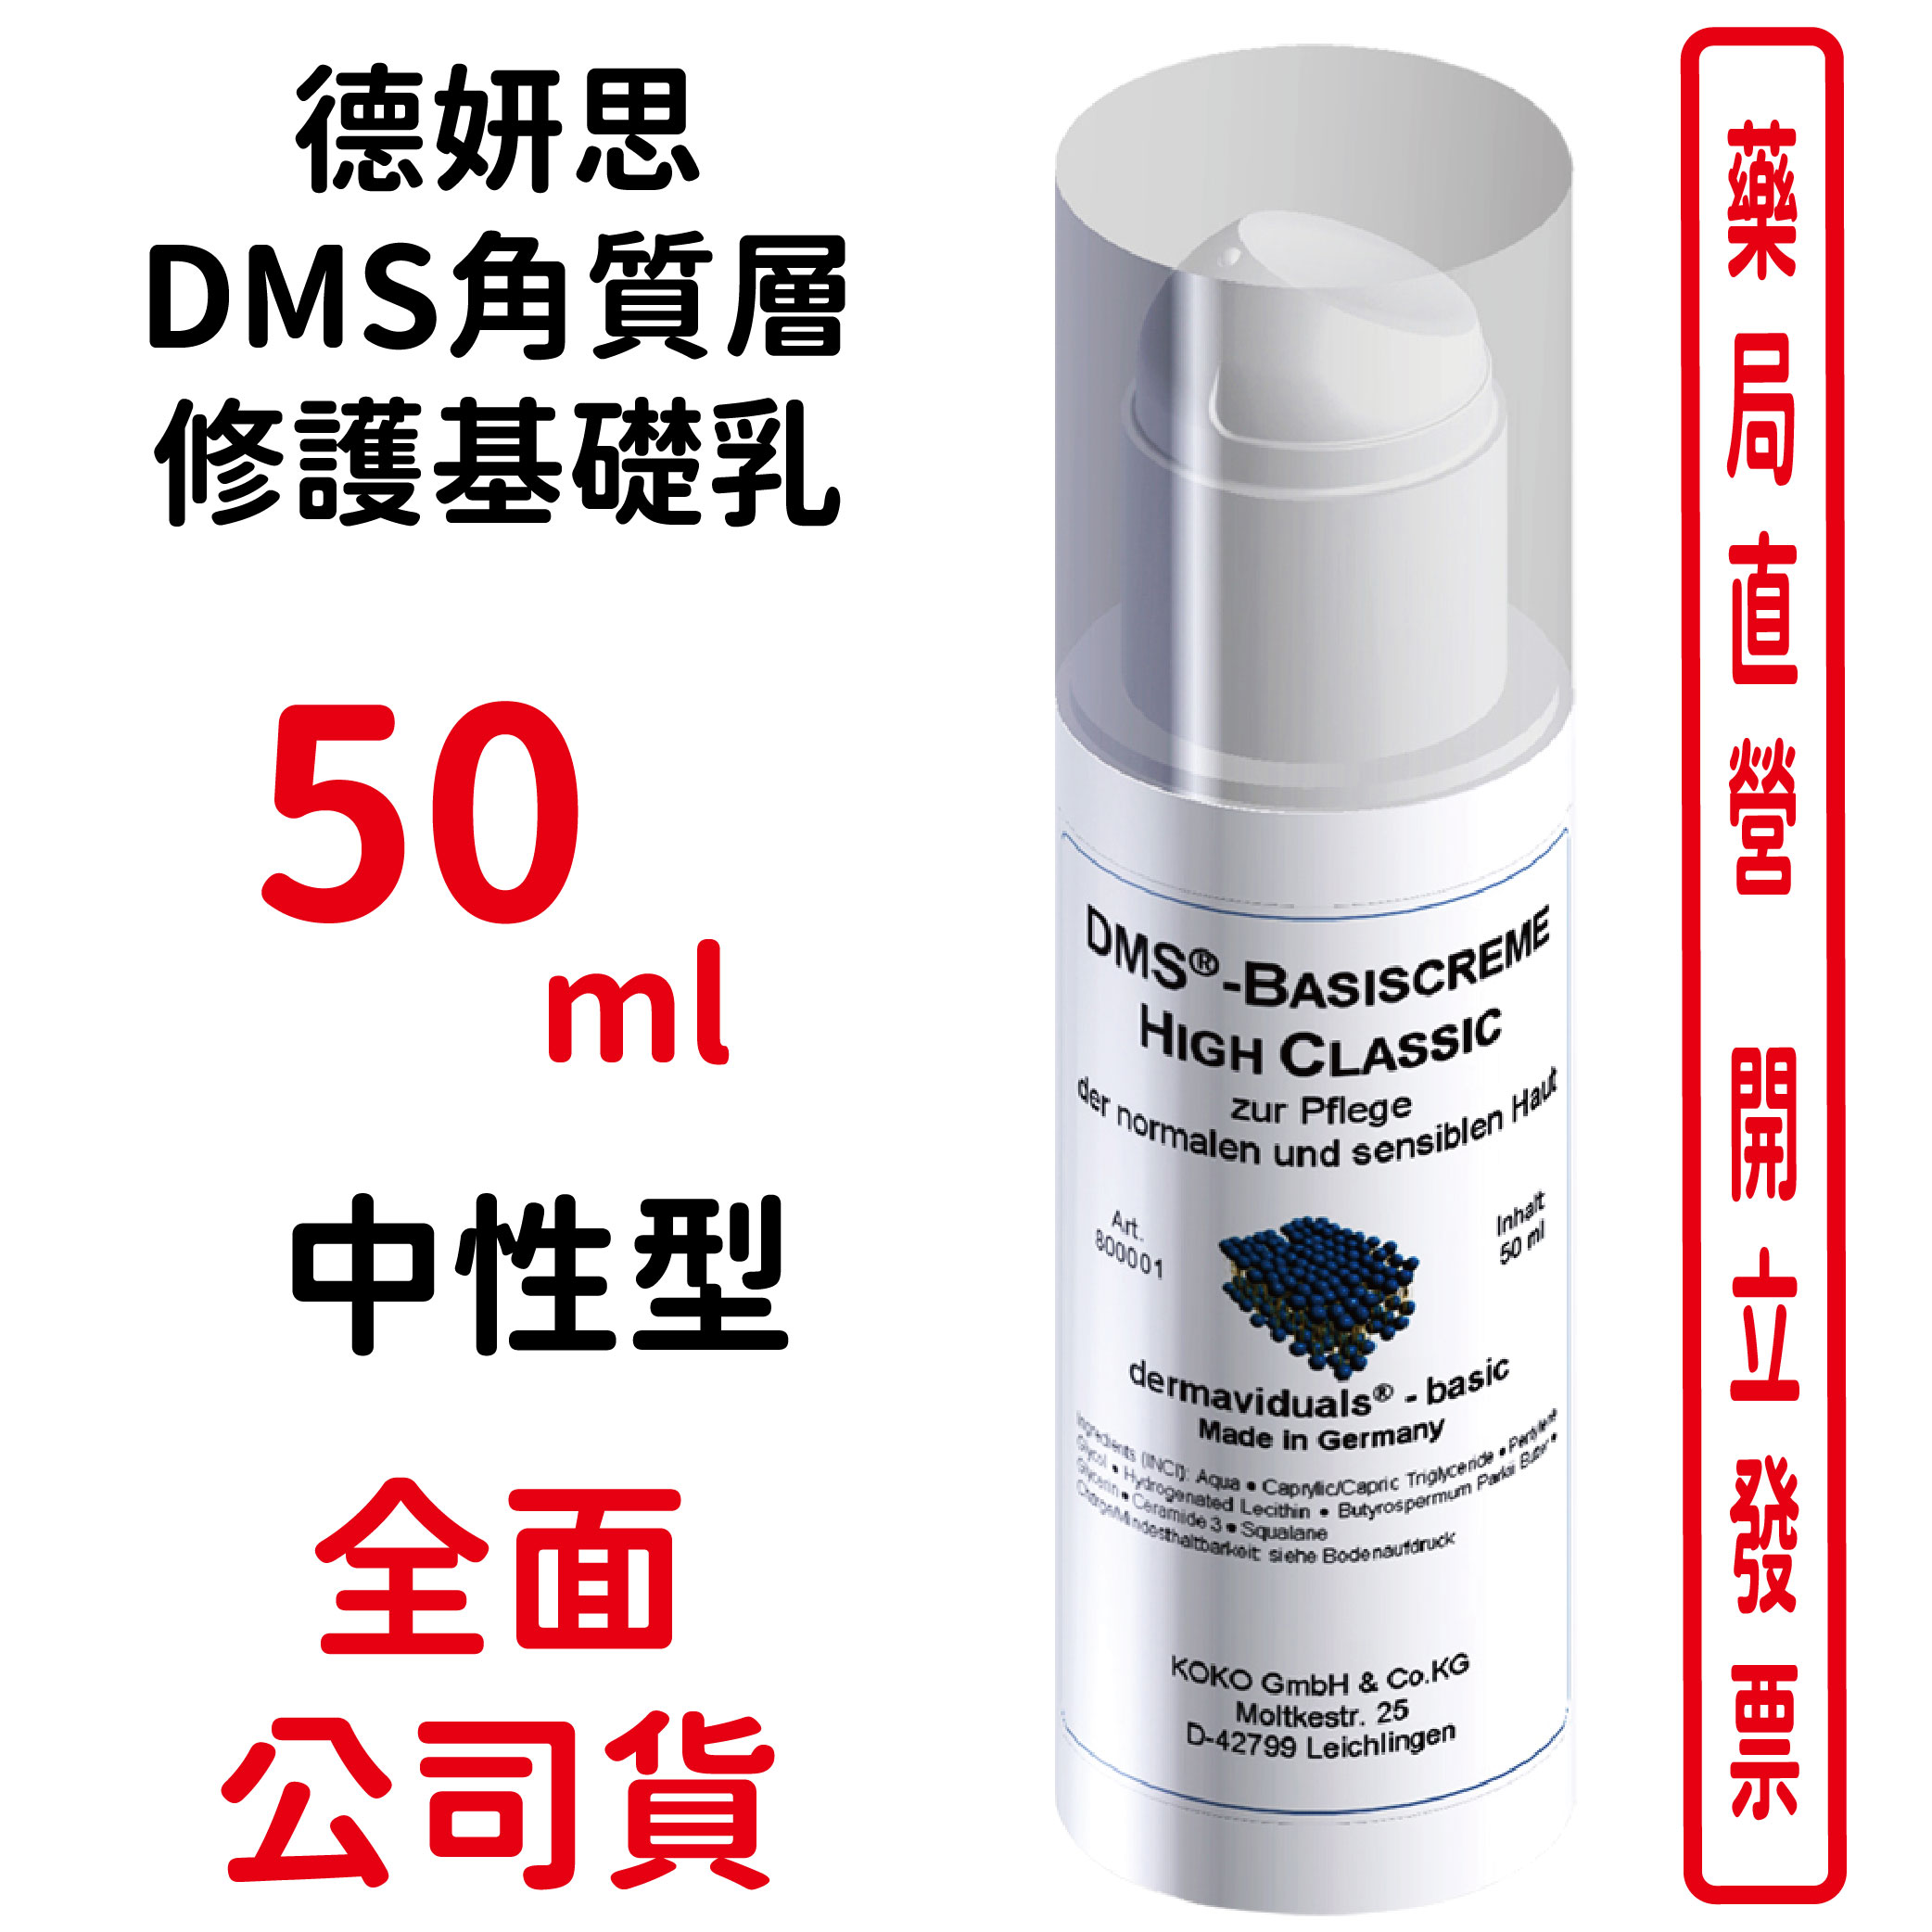 德妍思DMS角質層修護基礎乳(中性型)-50ml